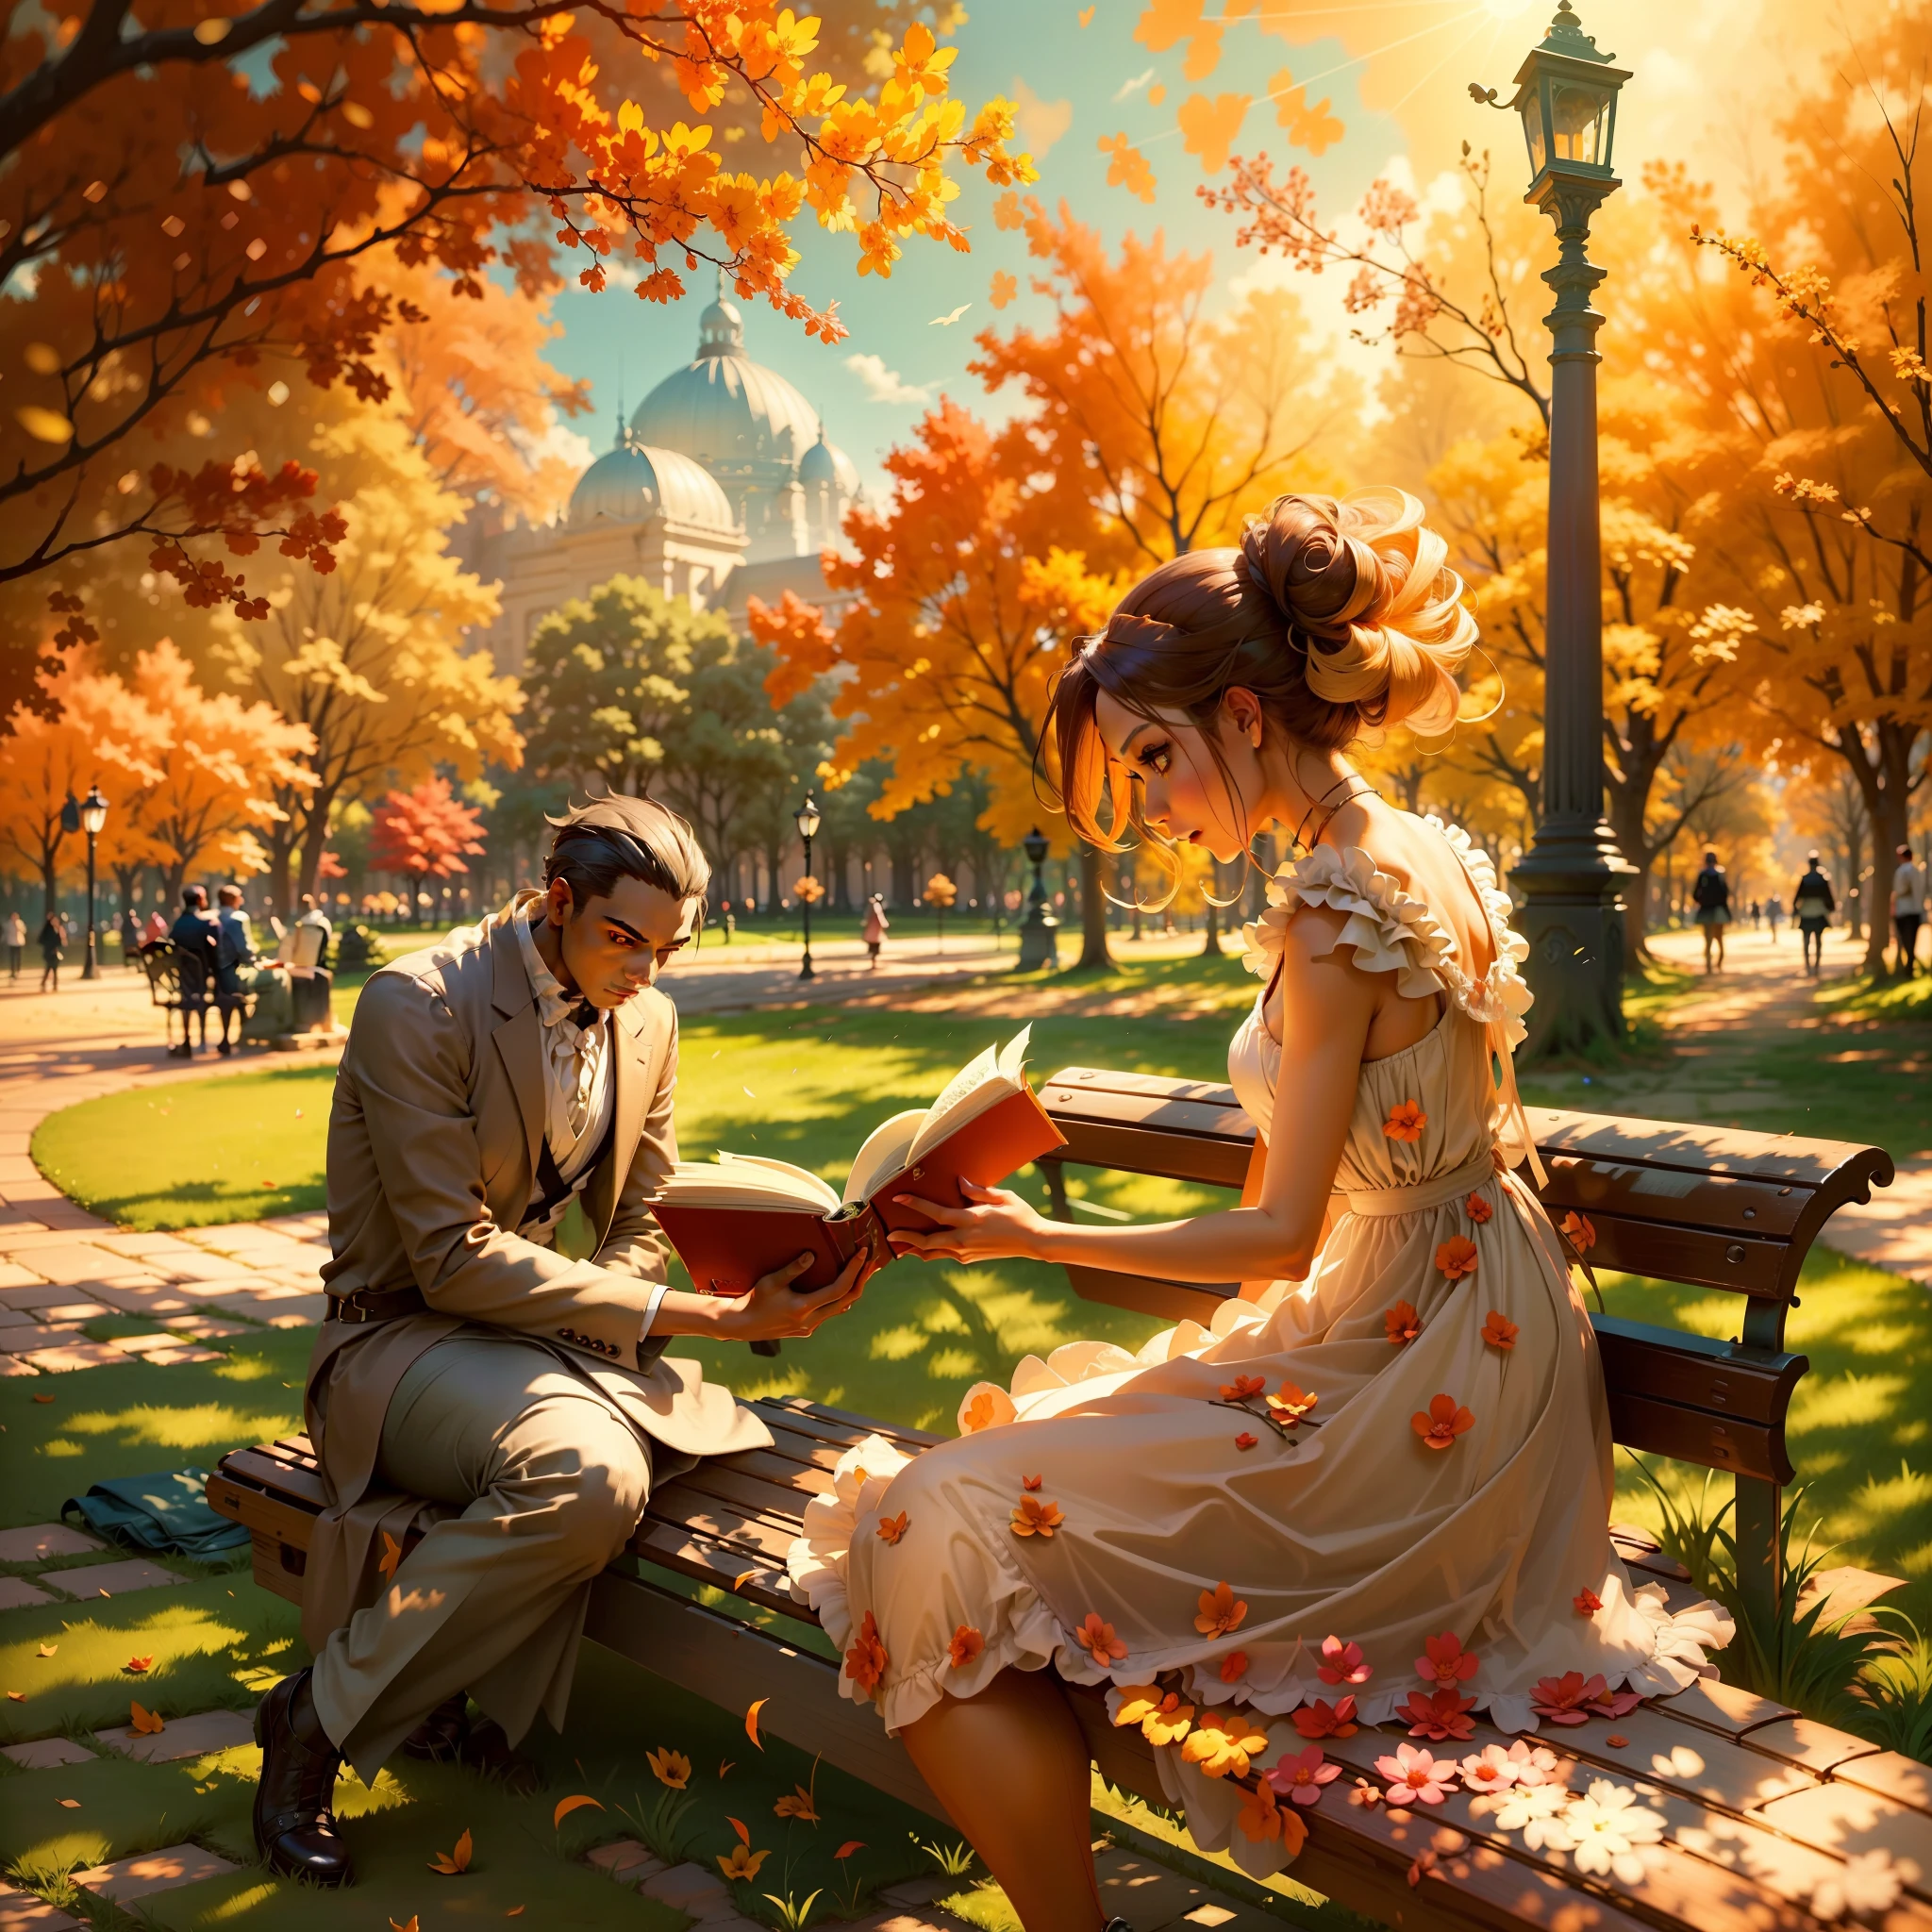 화창한 오후에 한 여성이 공원을 걷고 있는 장면을 상상해 보세요.. 그녀는 그녀의 아름다움을 더욱 돋보이게 하는 우아한 드레스를 입는다., 그리고 그녀의 호기심 많은 눈은 벤치에 앉아 있는 남자에게 고정됩니다., 책에 완전히 빠져들다. 배경의 태양 광선이 만들어내는 생동감 넘치는 분위기를 묘사하세요..